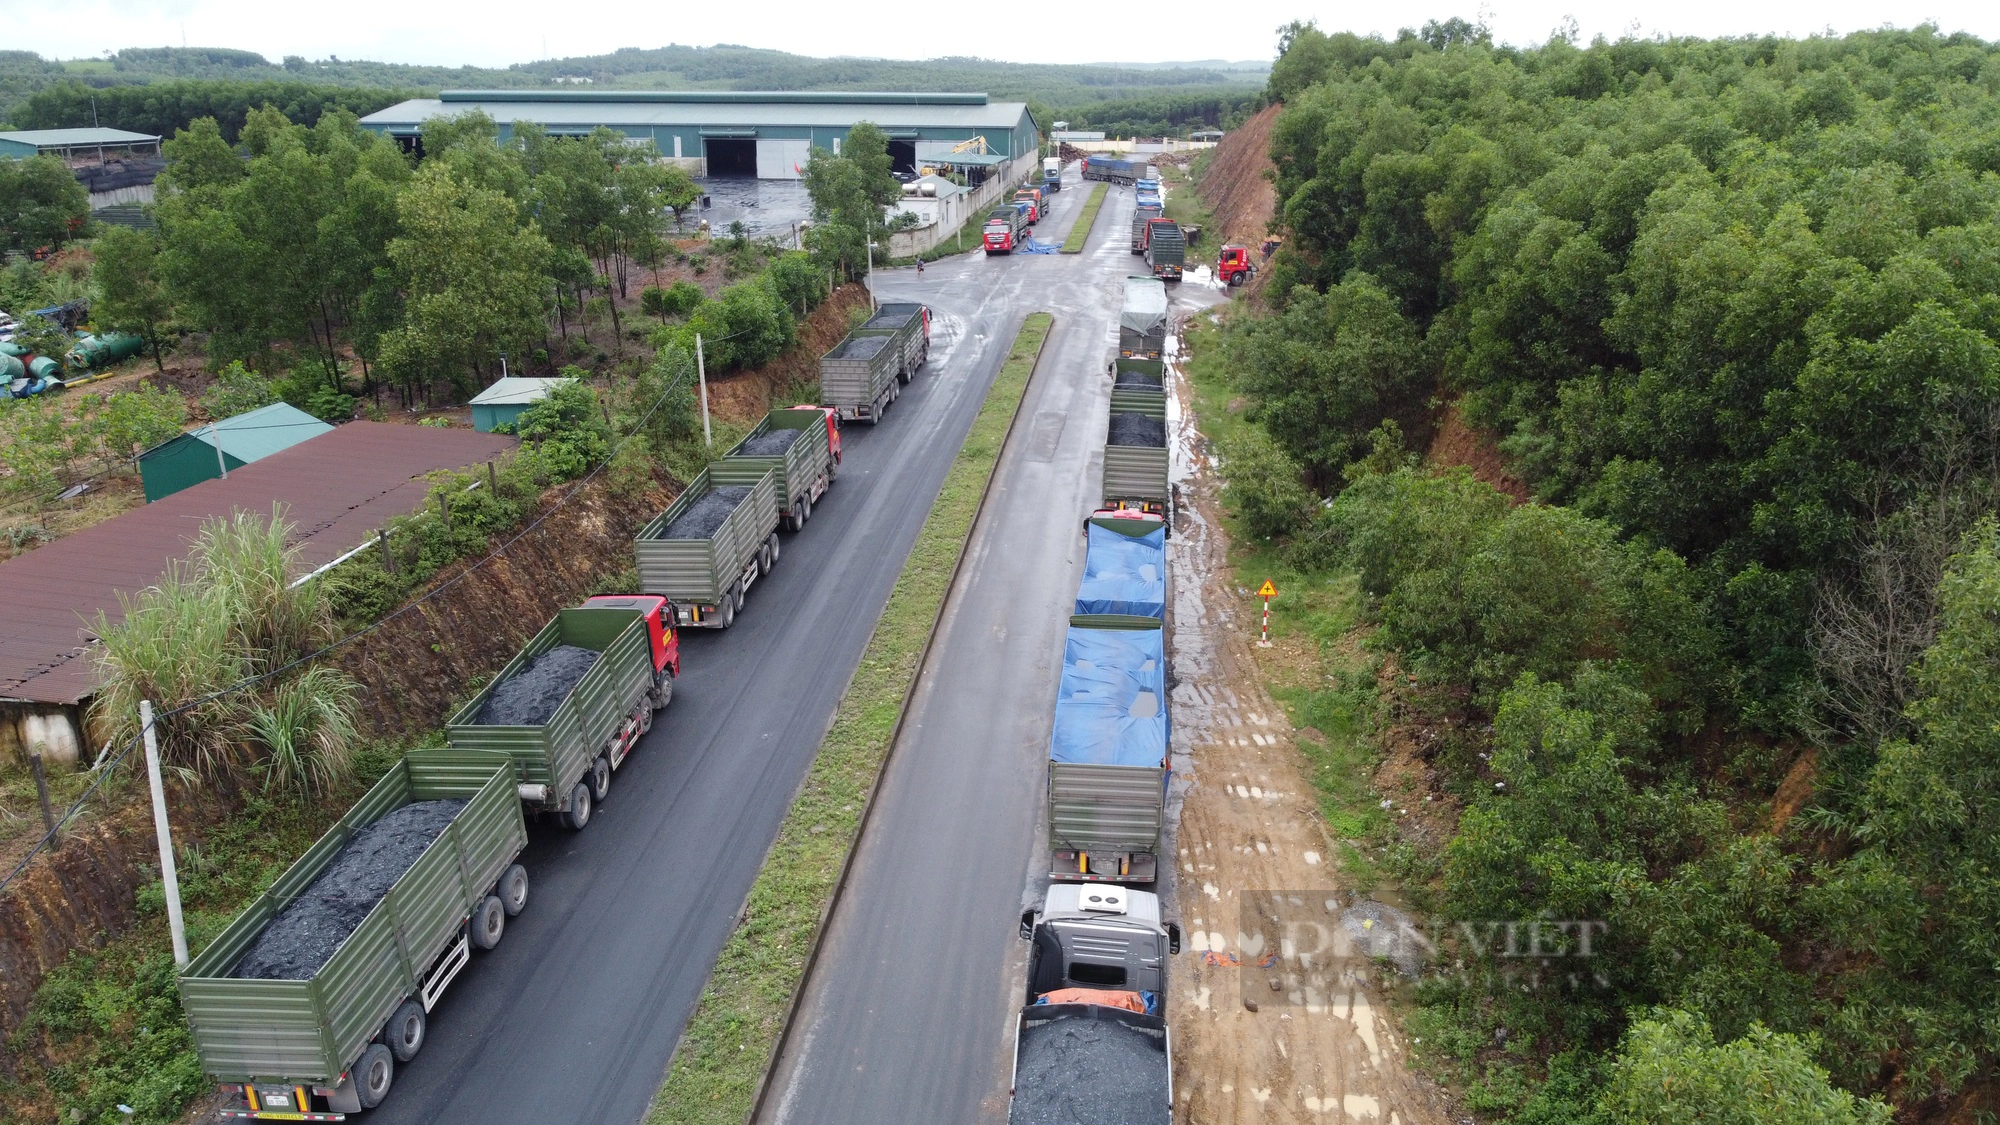 Mục sở thị “Thác nước đen” xả thải ra môi trường ở Quảng Trị - Ảnh 2.